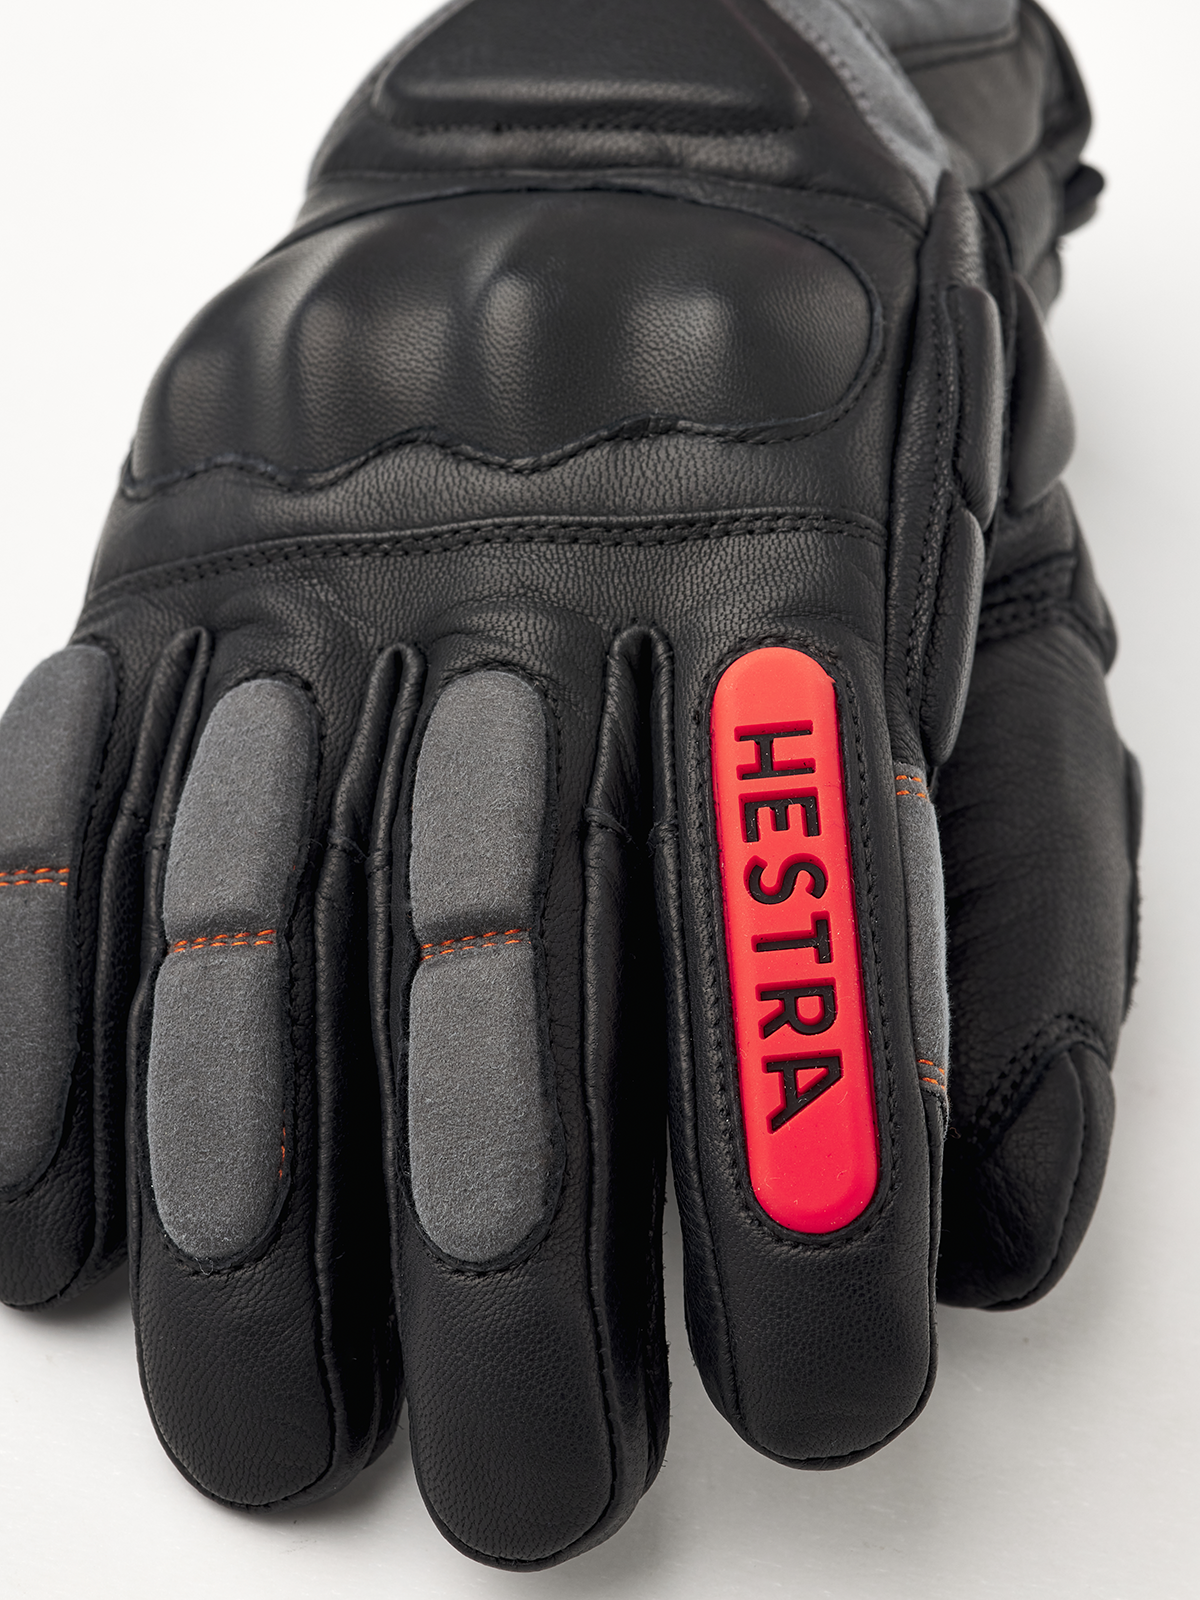 sarkom Bror besked Impact Racing Sr. 5-finger | Hestra Gloves